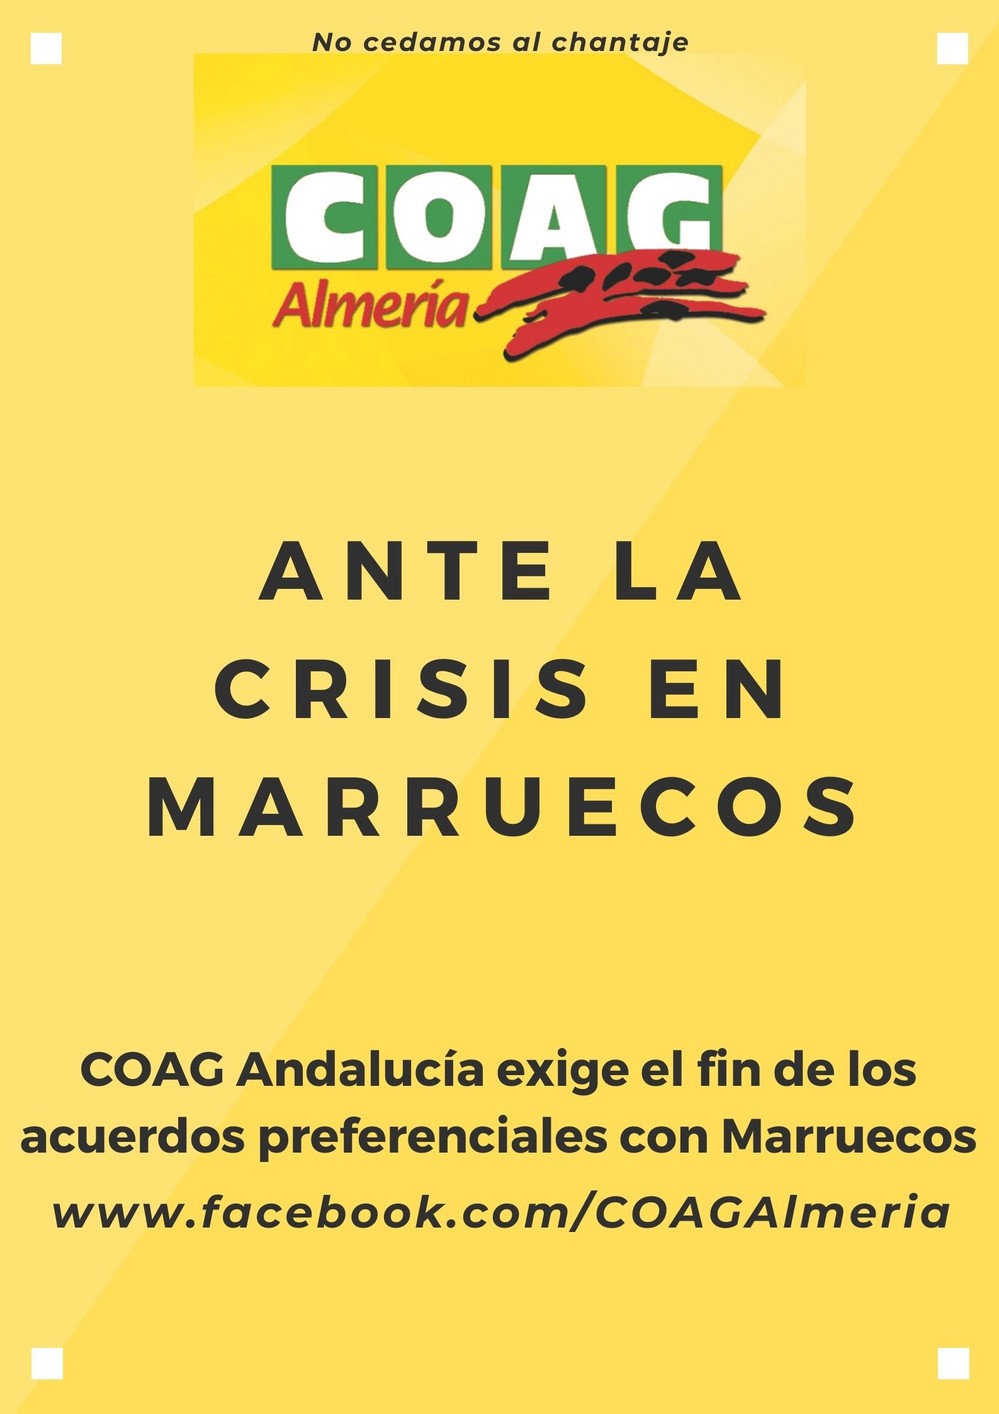 COAG Andalucía exige la inmediata paralización de los acuerdos comerciales con Marruecos